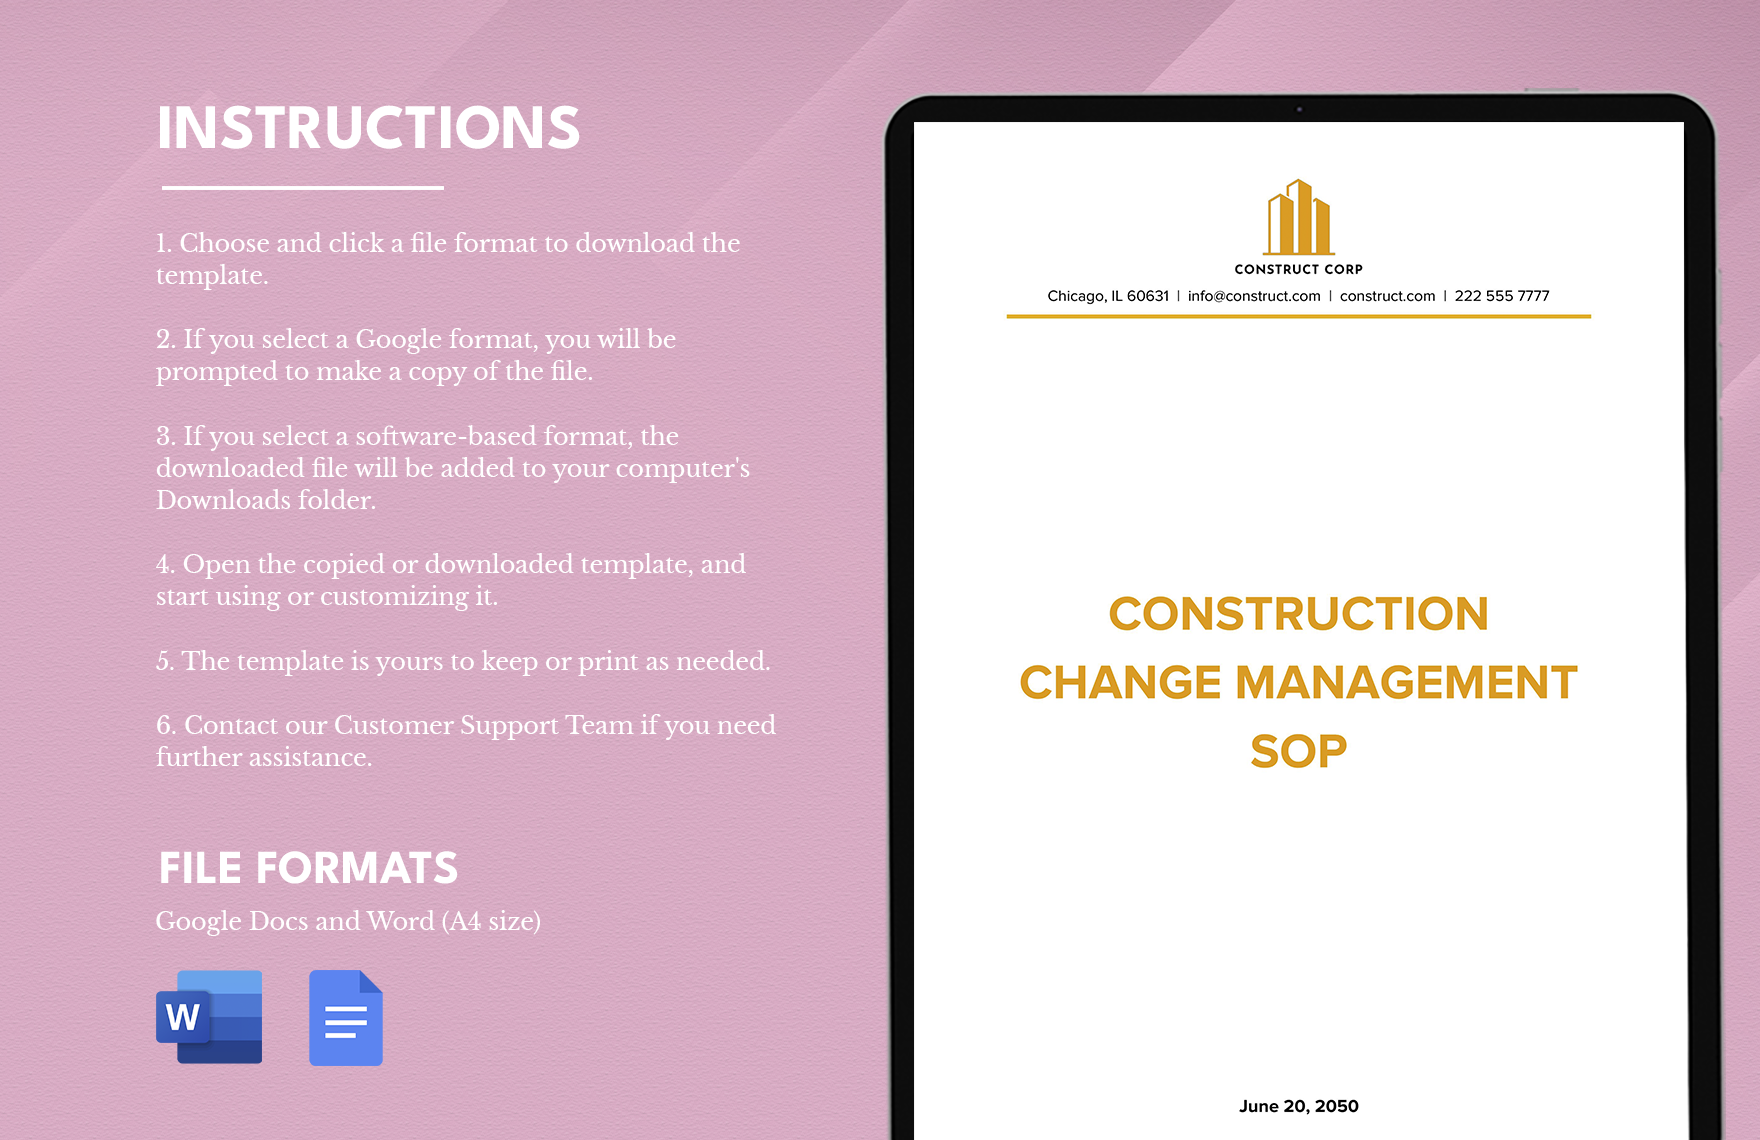 Construction Change Management SOP